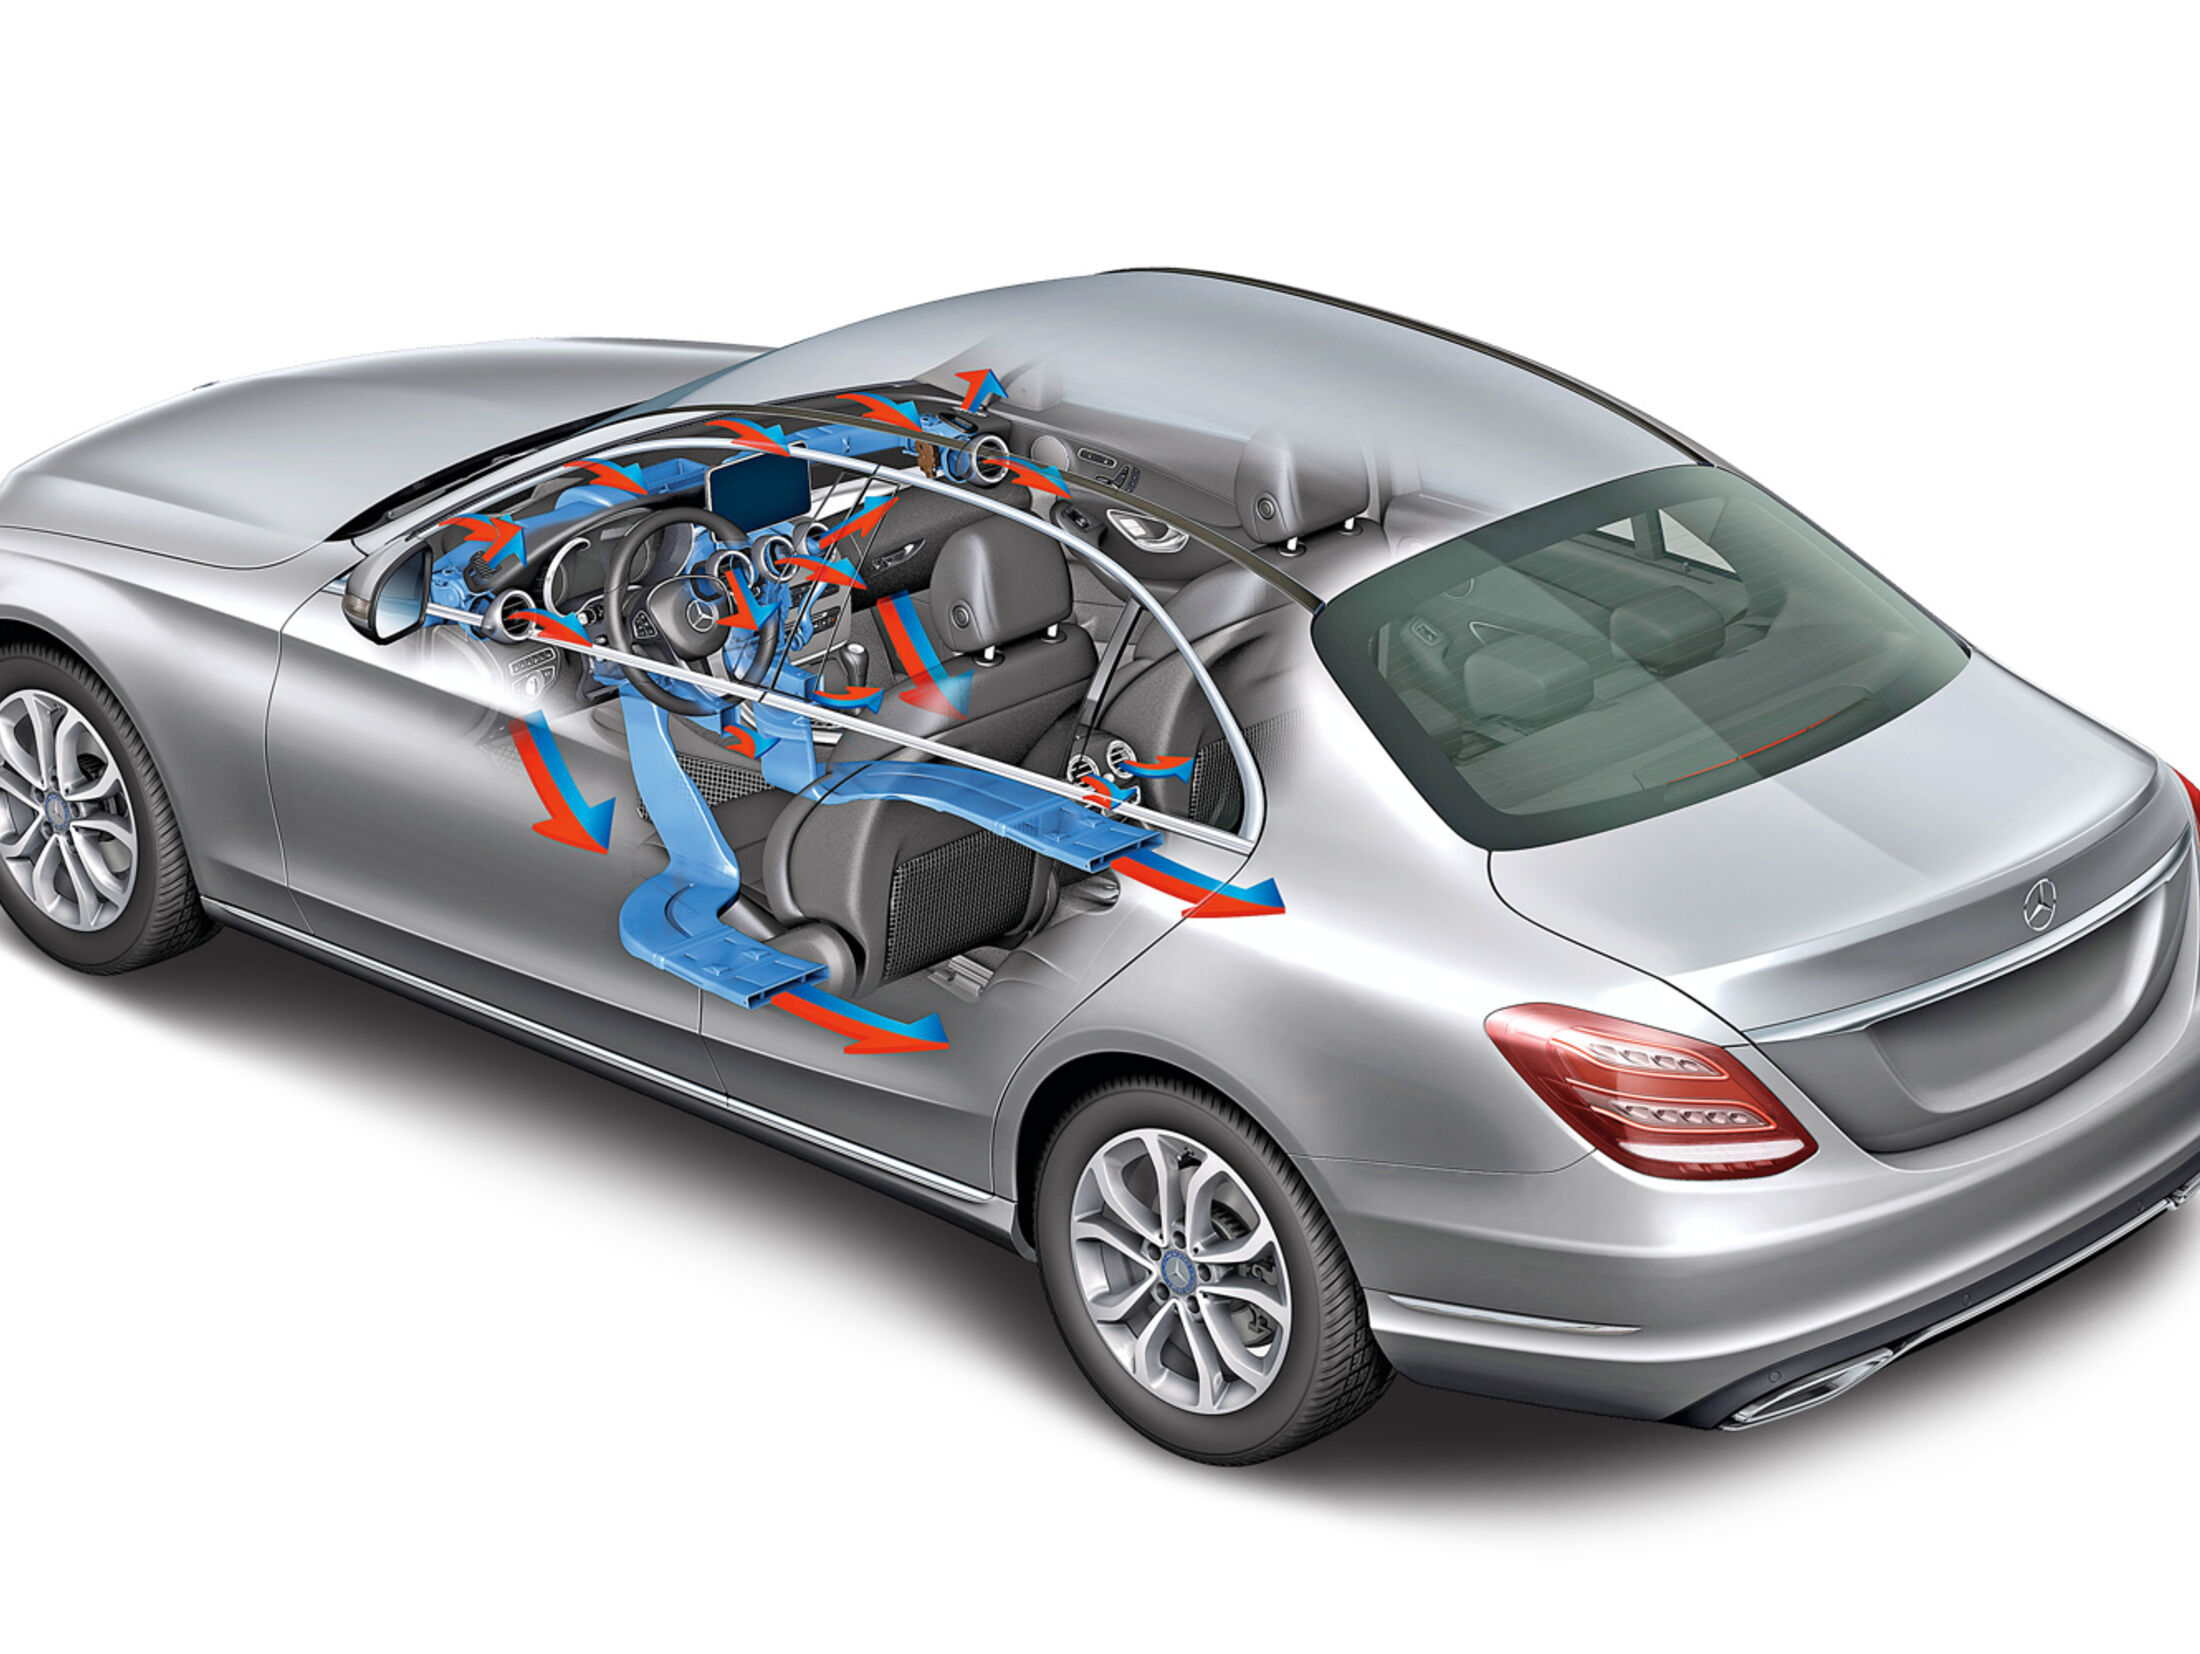 Klimatisierung in der Mercedes C-Klasse: Viel Aufwand für ein